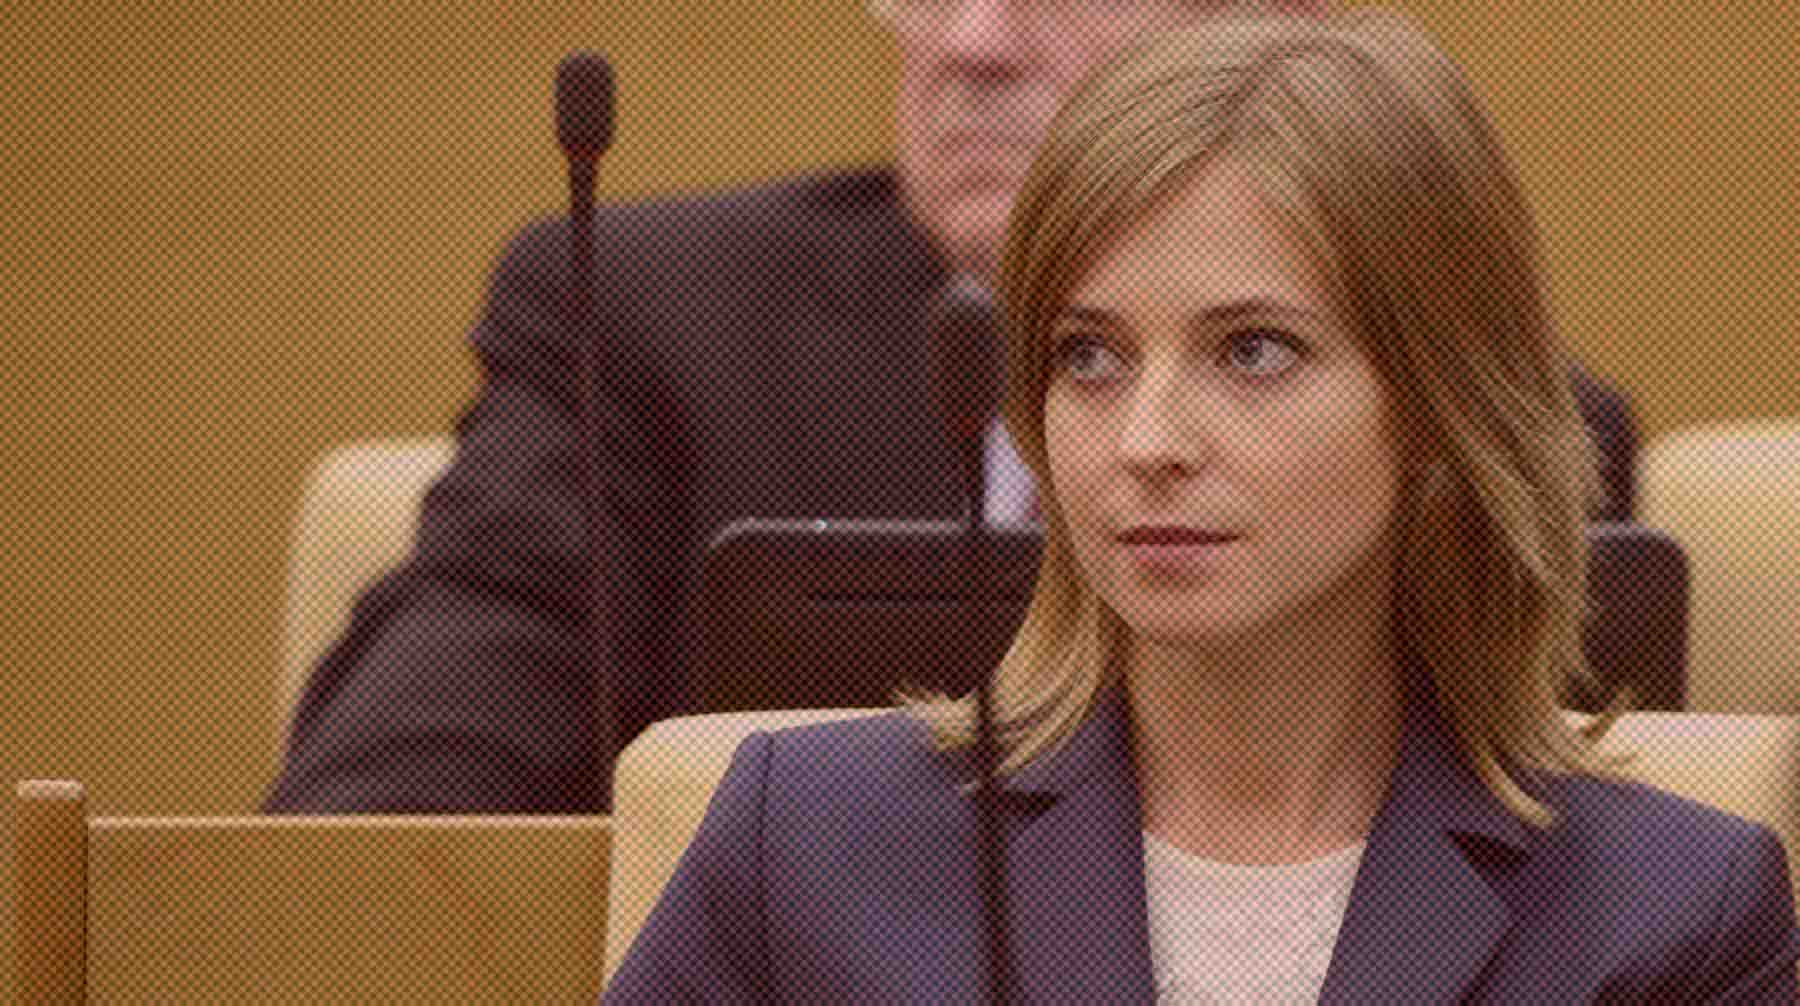 У экс-депутата Госдумы изменились личные обстоятельства, сообщили в МИД РФ Фото: Global Look Press / Kremlin Pool